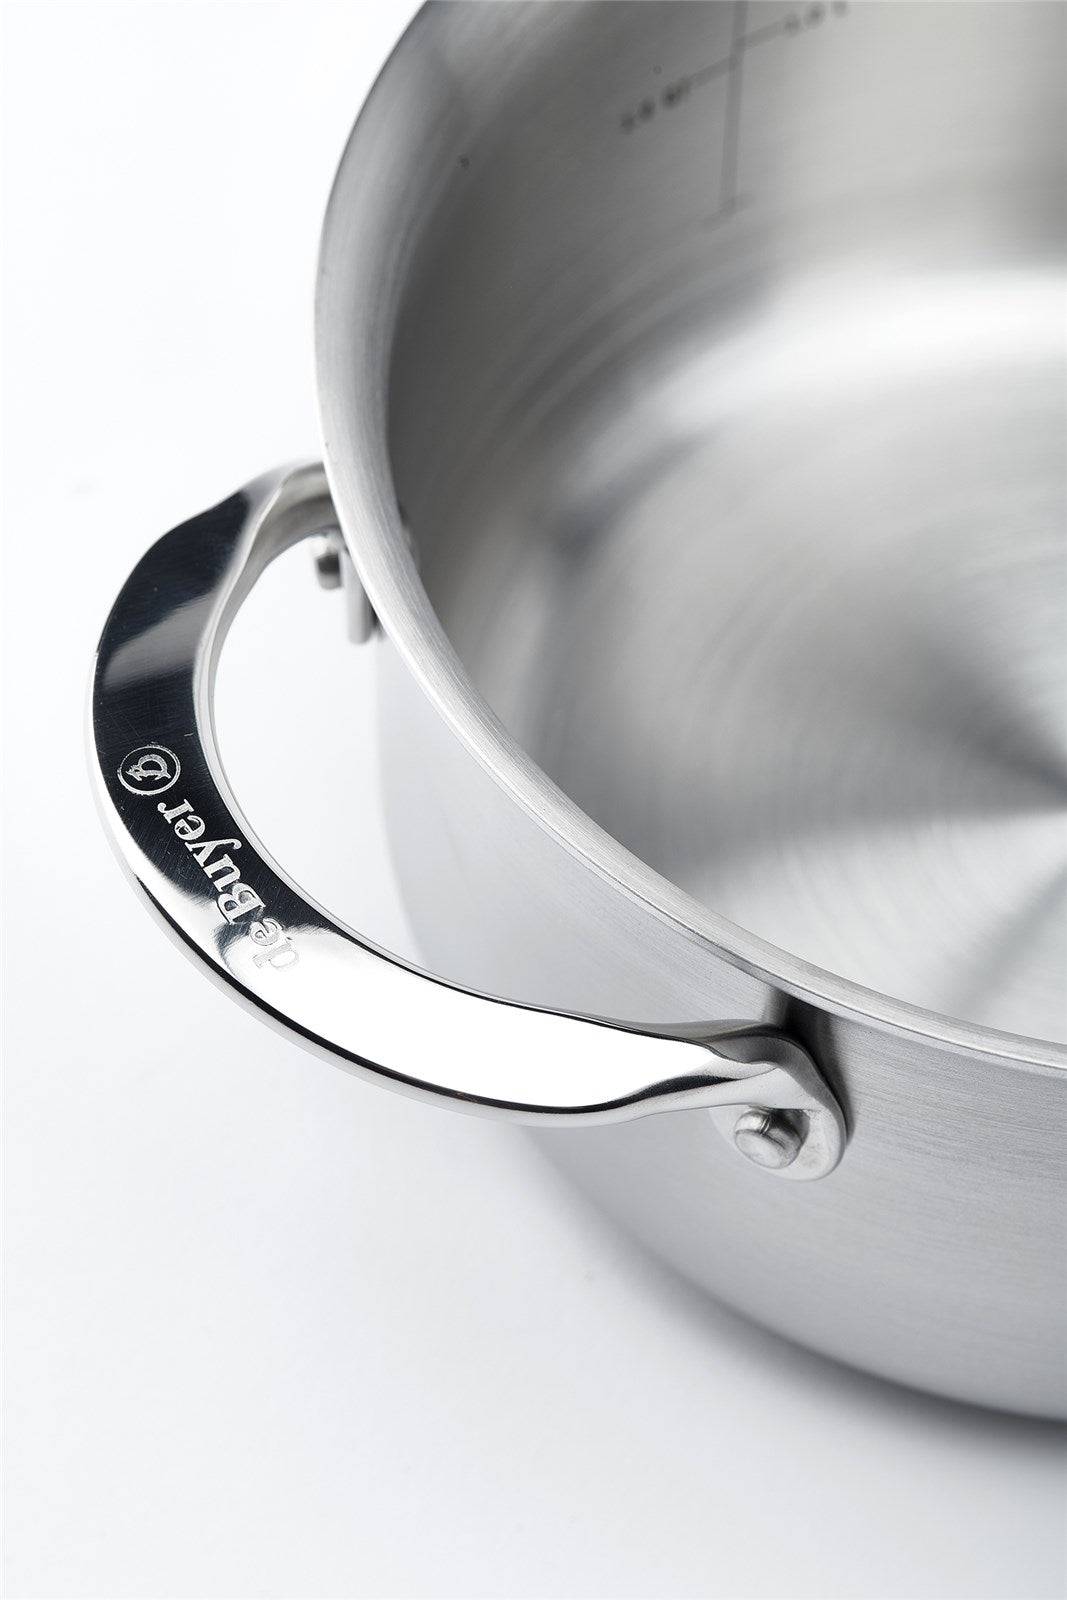 BRATENTOPF OHNE DECKEL ALCHIMY 16 CM in Silber präsentiert im Onlineshop von KAQTU Design AG. Topf ist von de Buyer